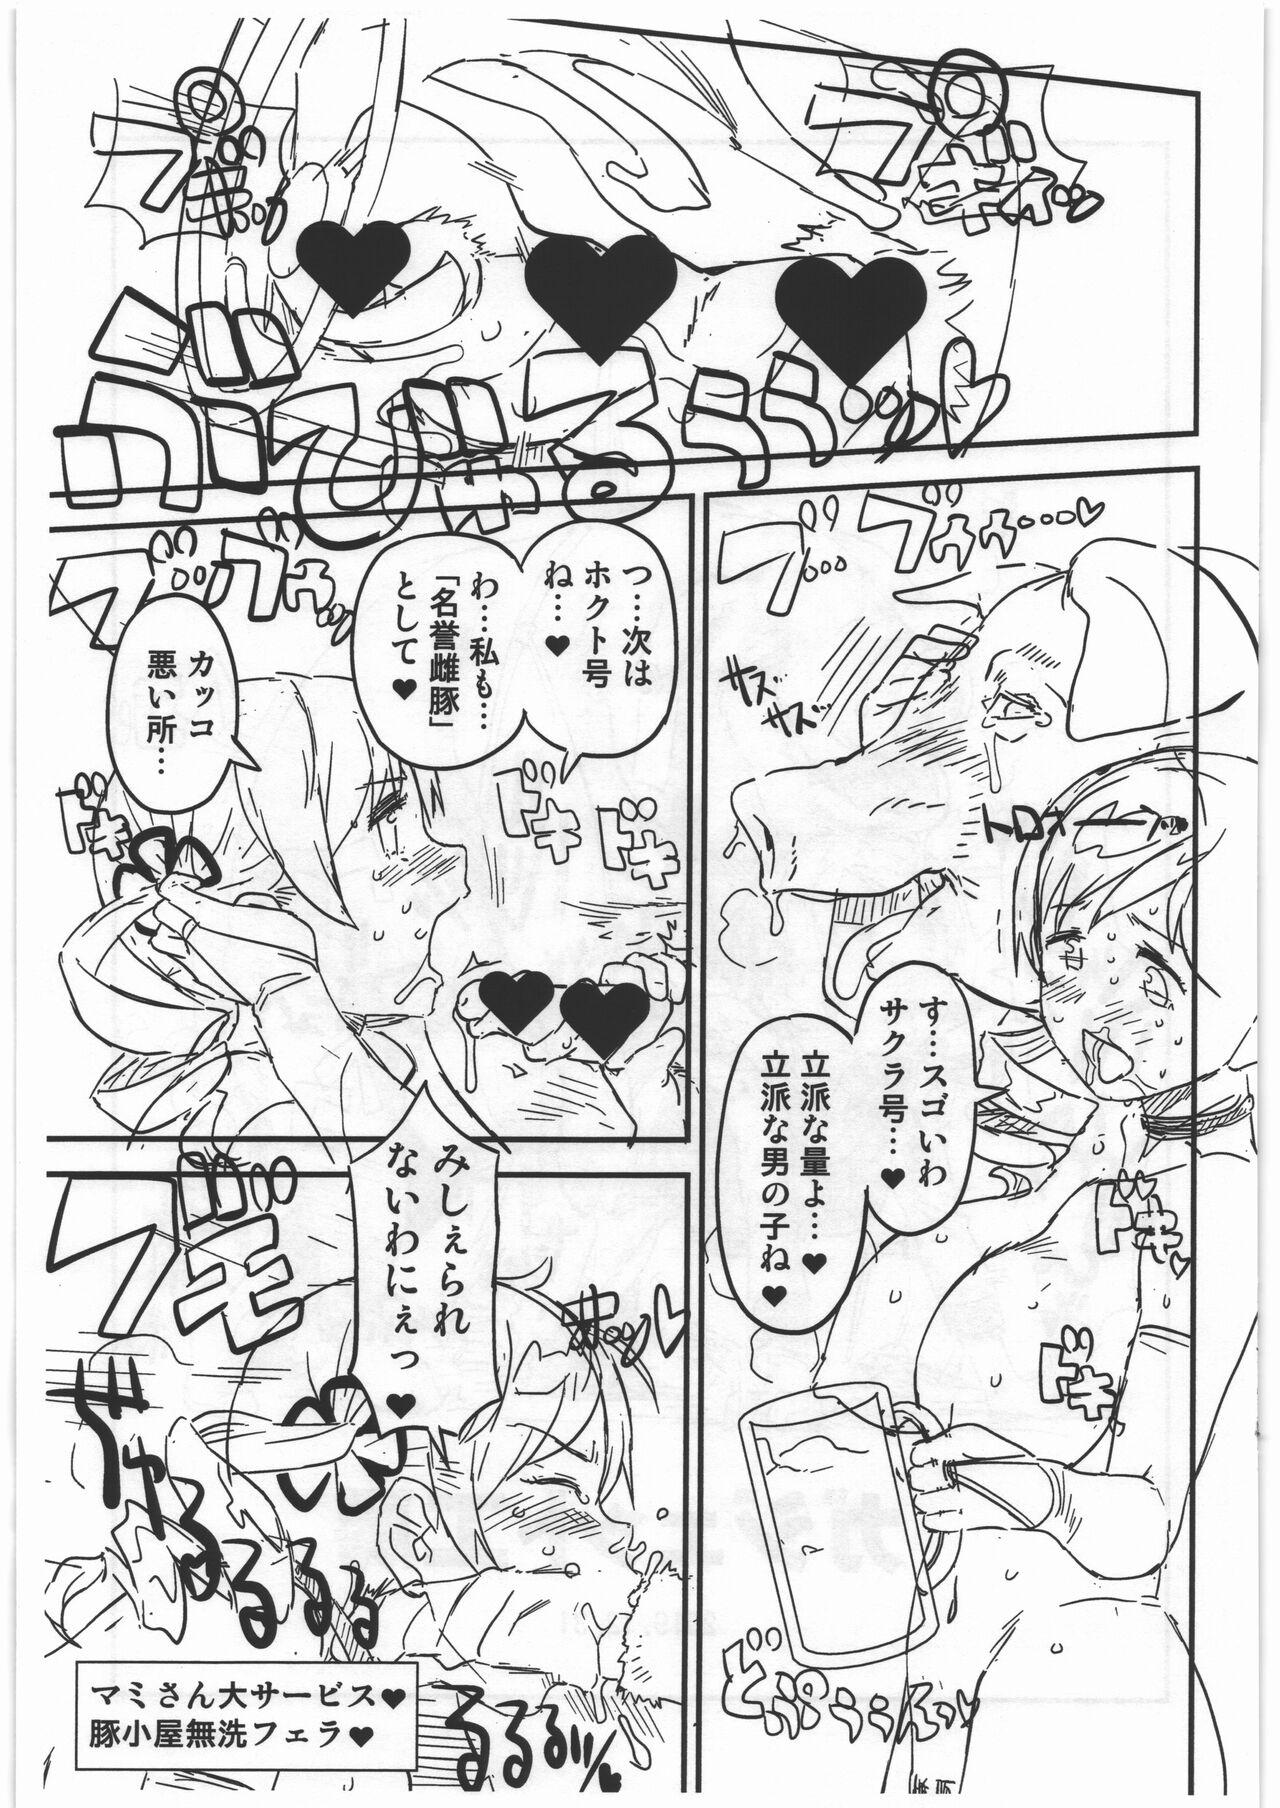 Style CB:NG M★M - Puella magi madoka magica Monster hunter Teen Fuck - Page 15